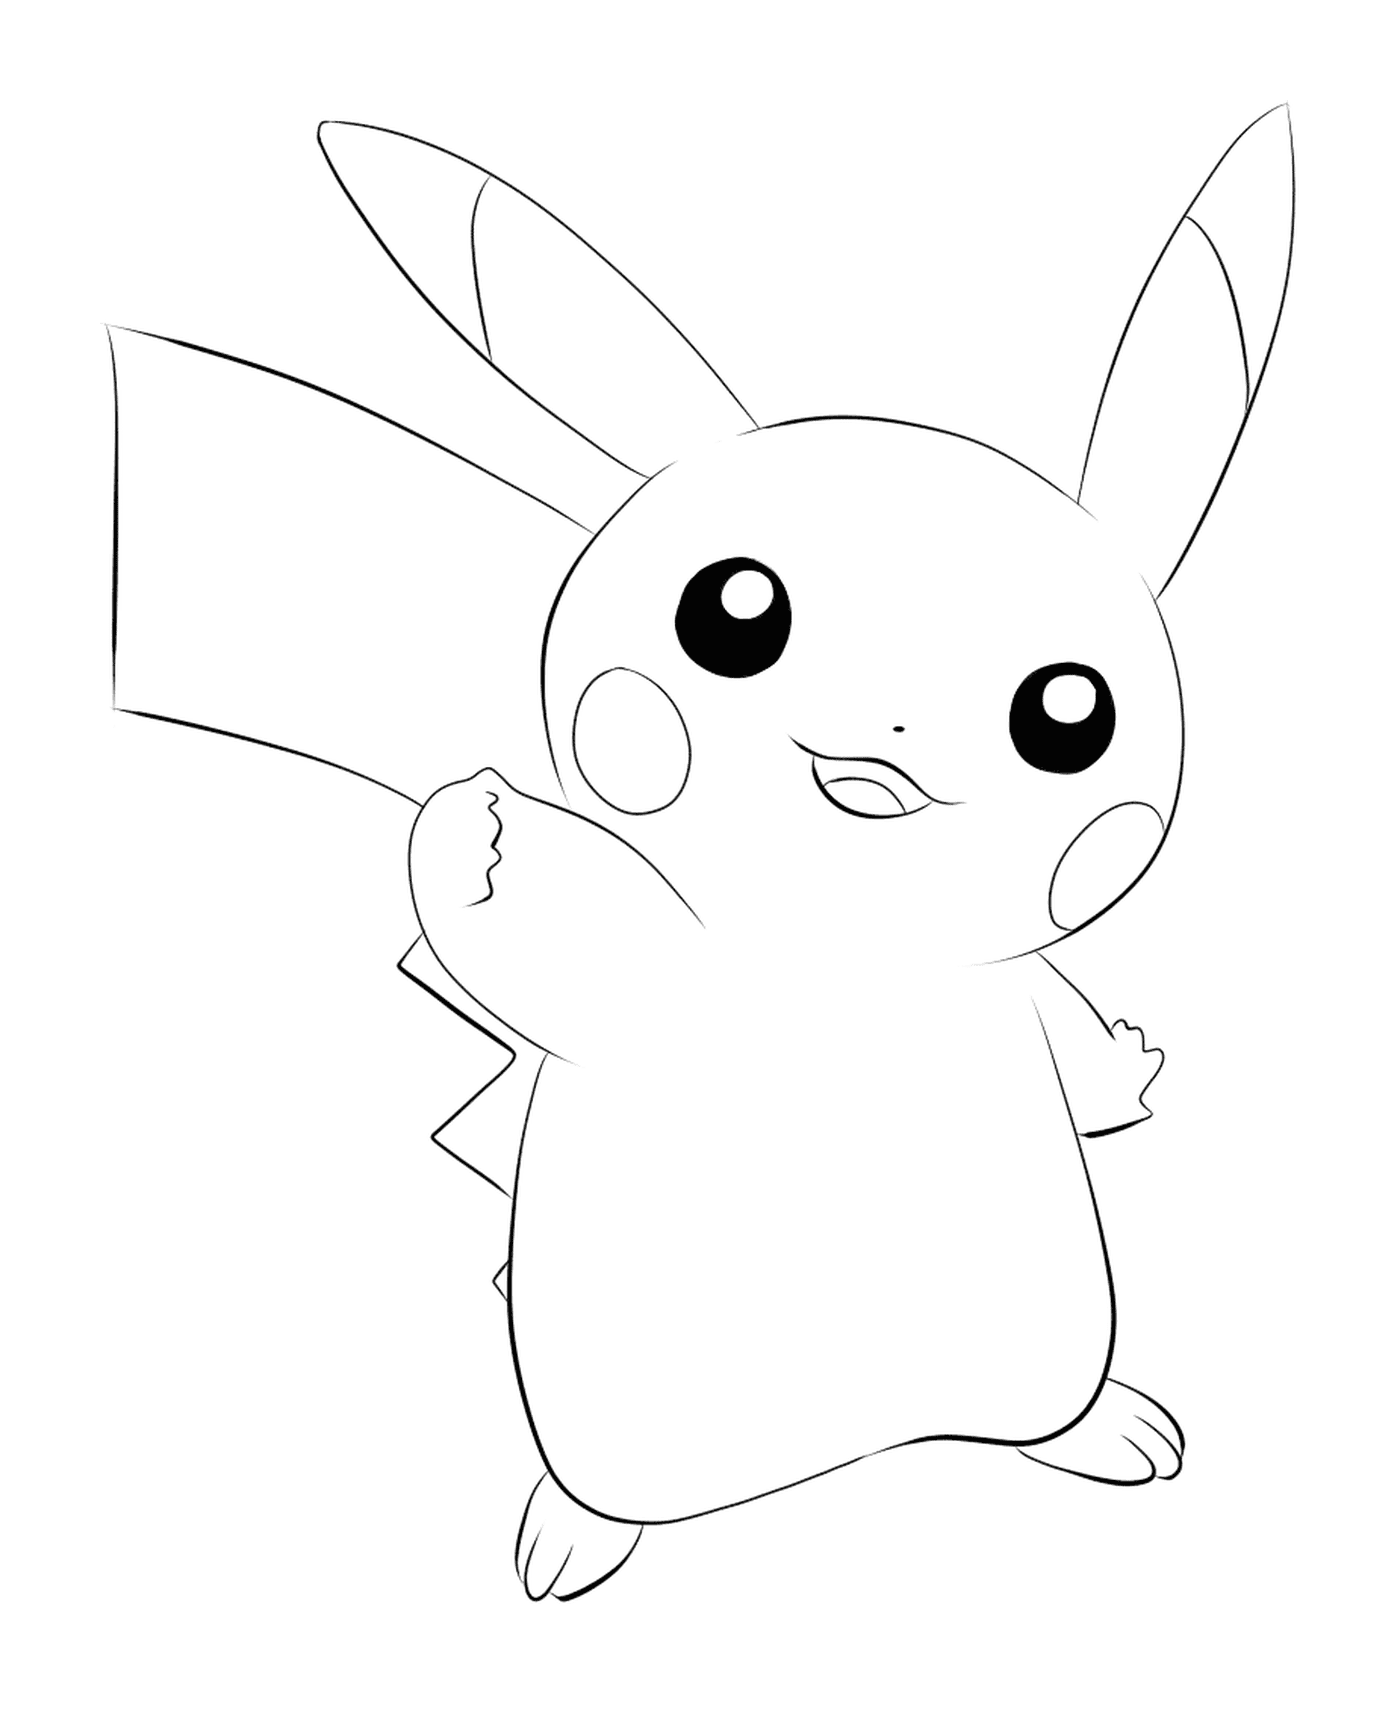   Pikachu, le Pokémon emblématique 